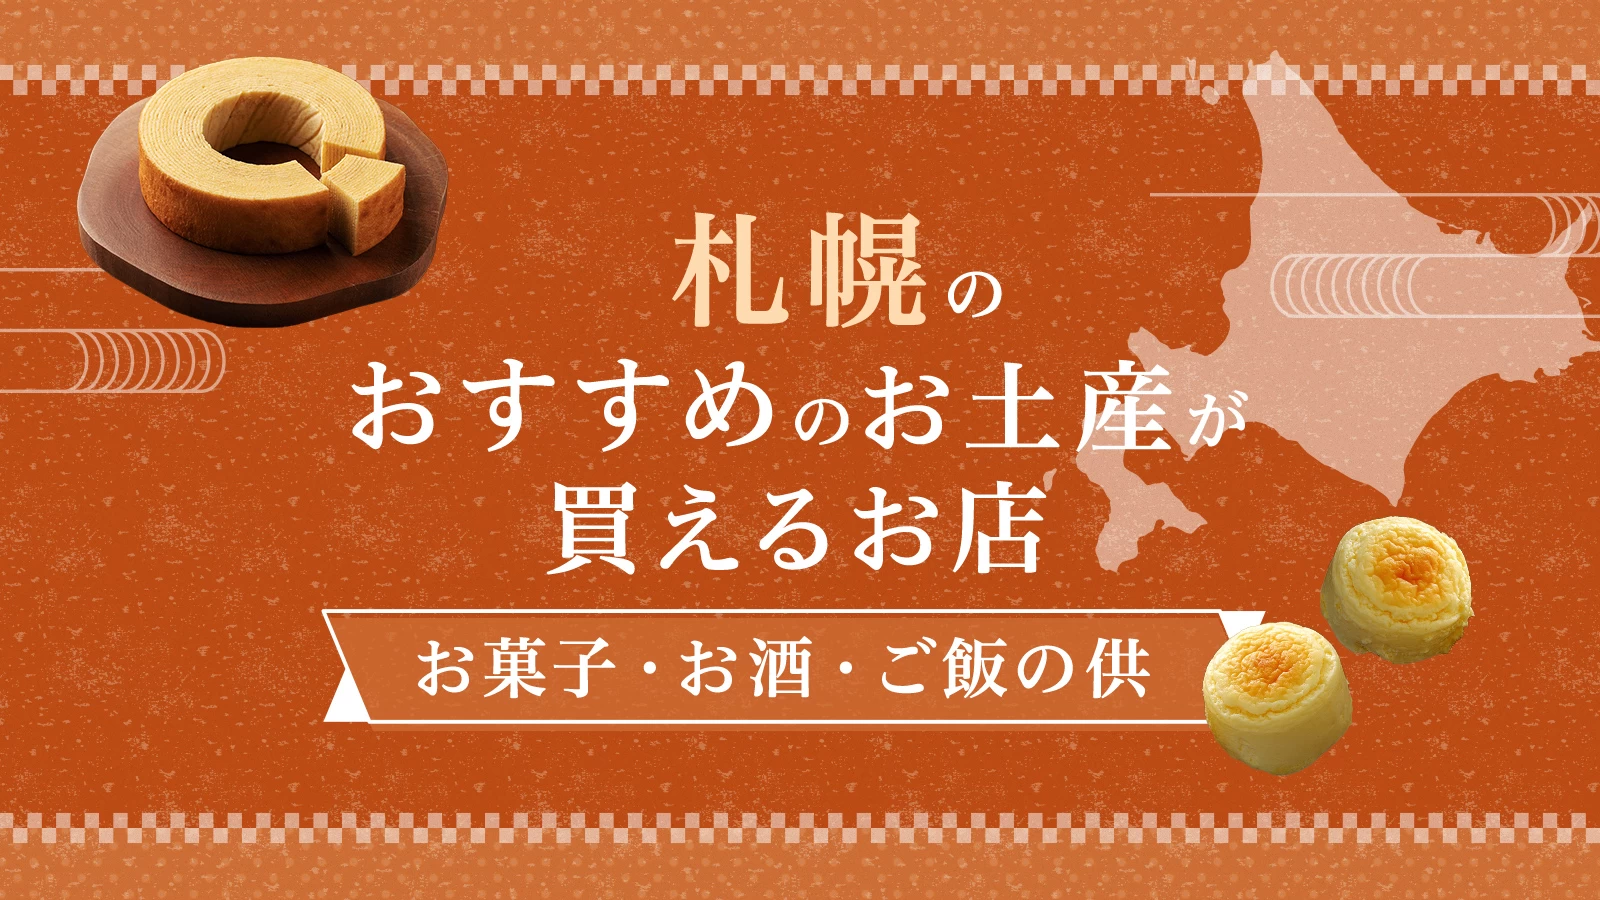 札幌のおすすめのお土産が買えるお店11選。人気のお菓子・ご飯の供を紹介